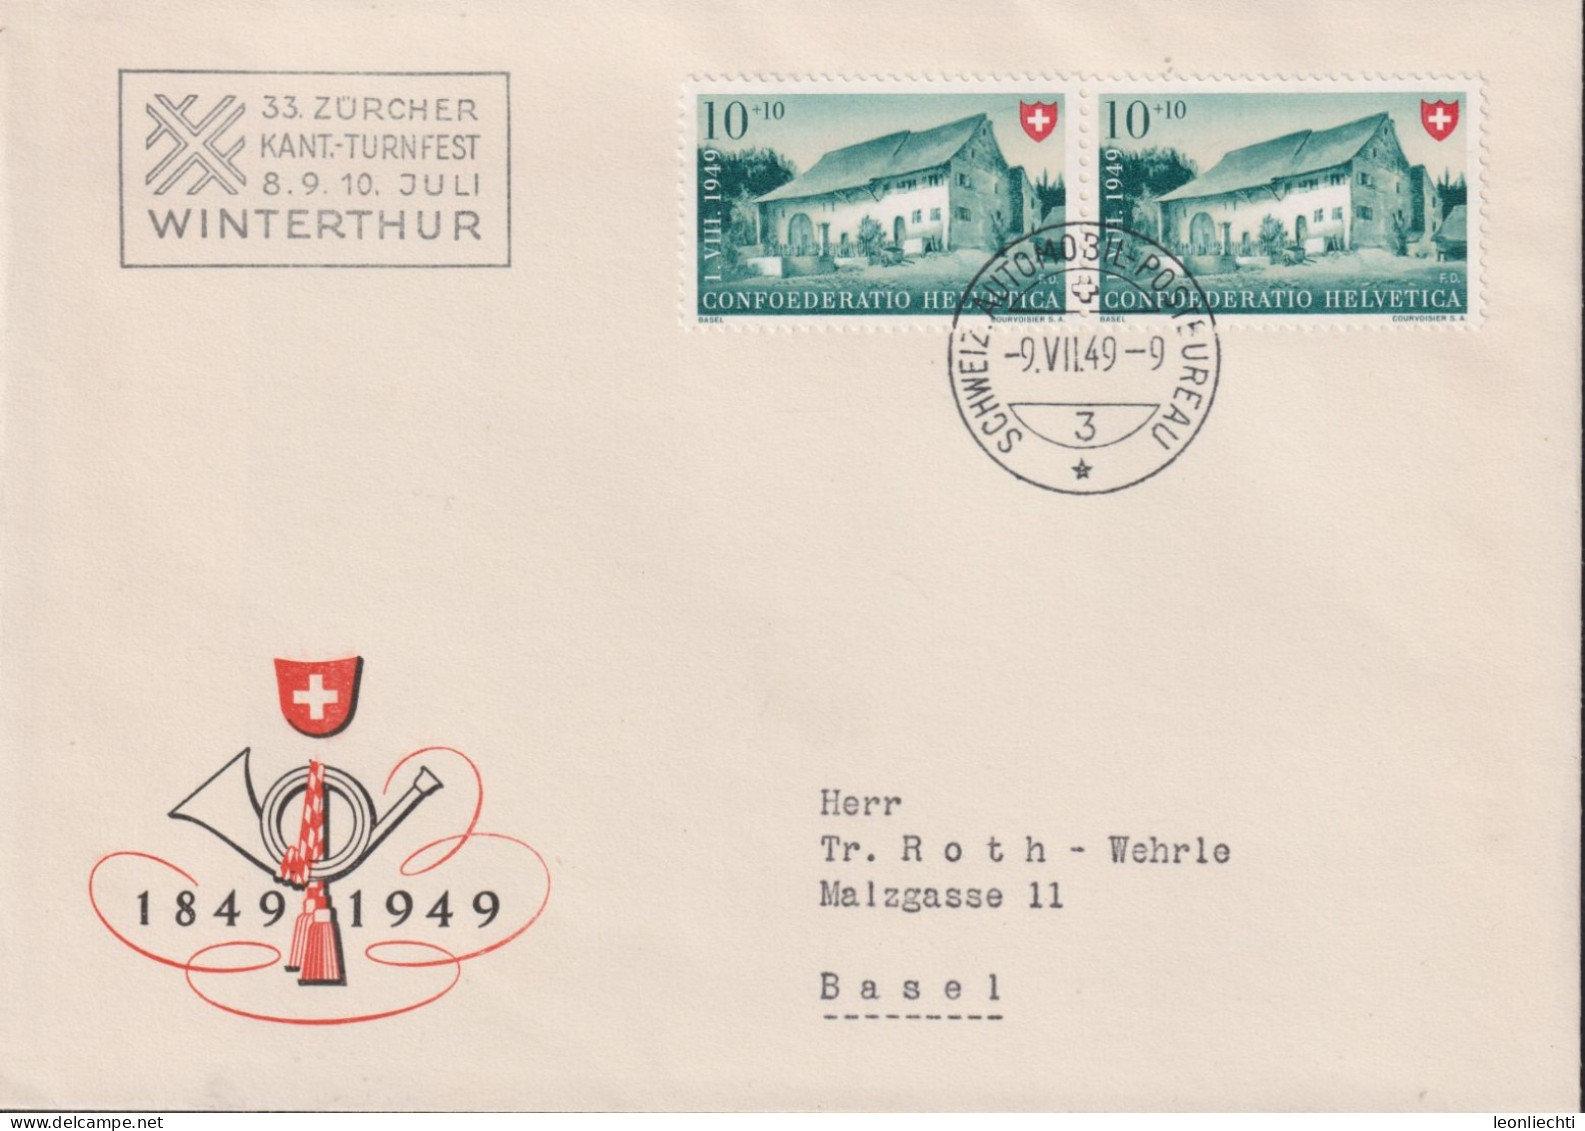 1949 Schweiz Pro Patria, Zum:CH B43, Mi:CH 526, Bauernhaus Im Baselbiet. (33.Zürcher Kant.-Turnfest Winterthur) - Lettres & Documents